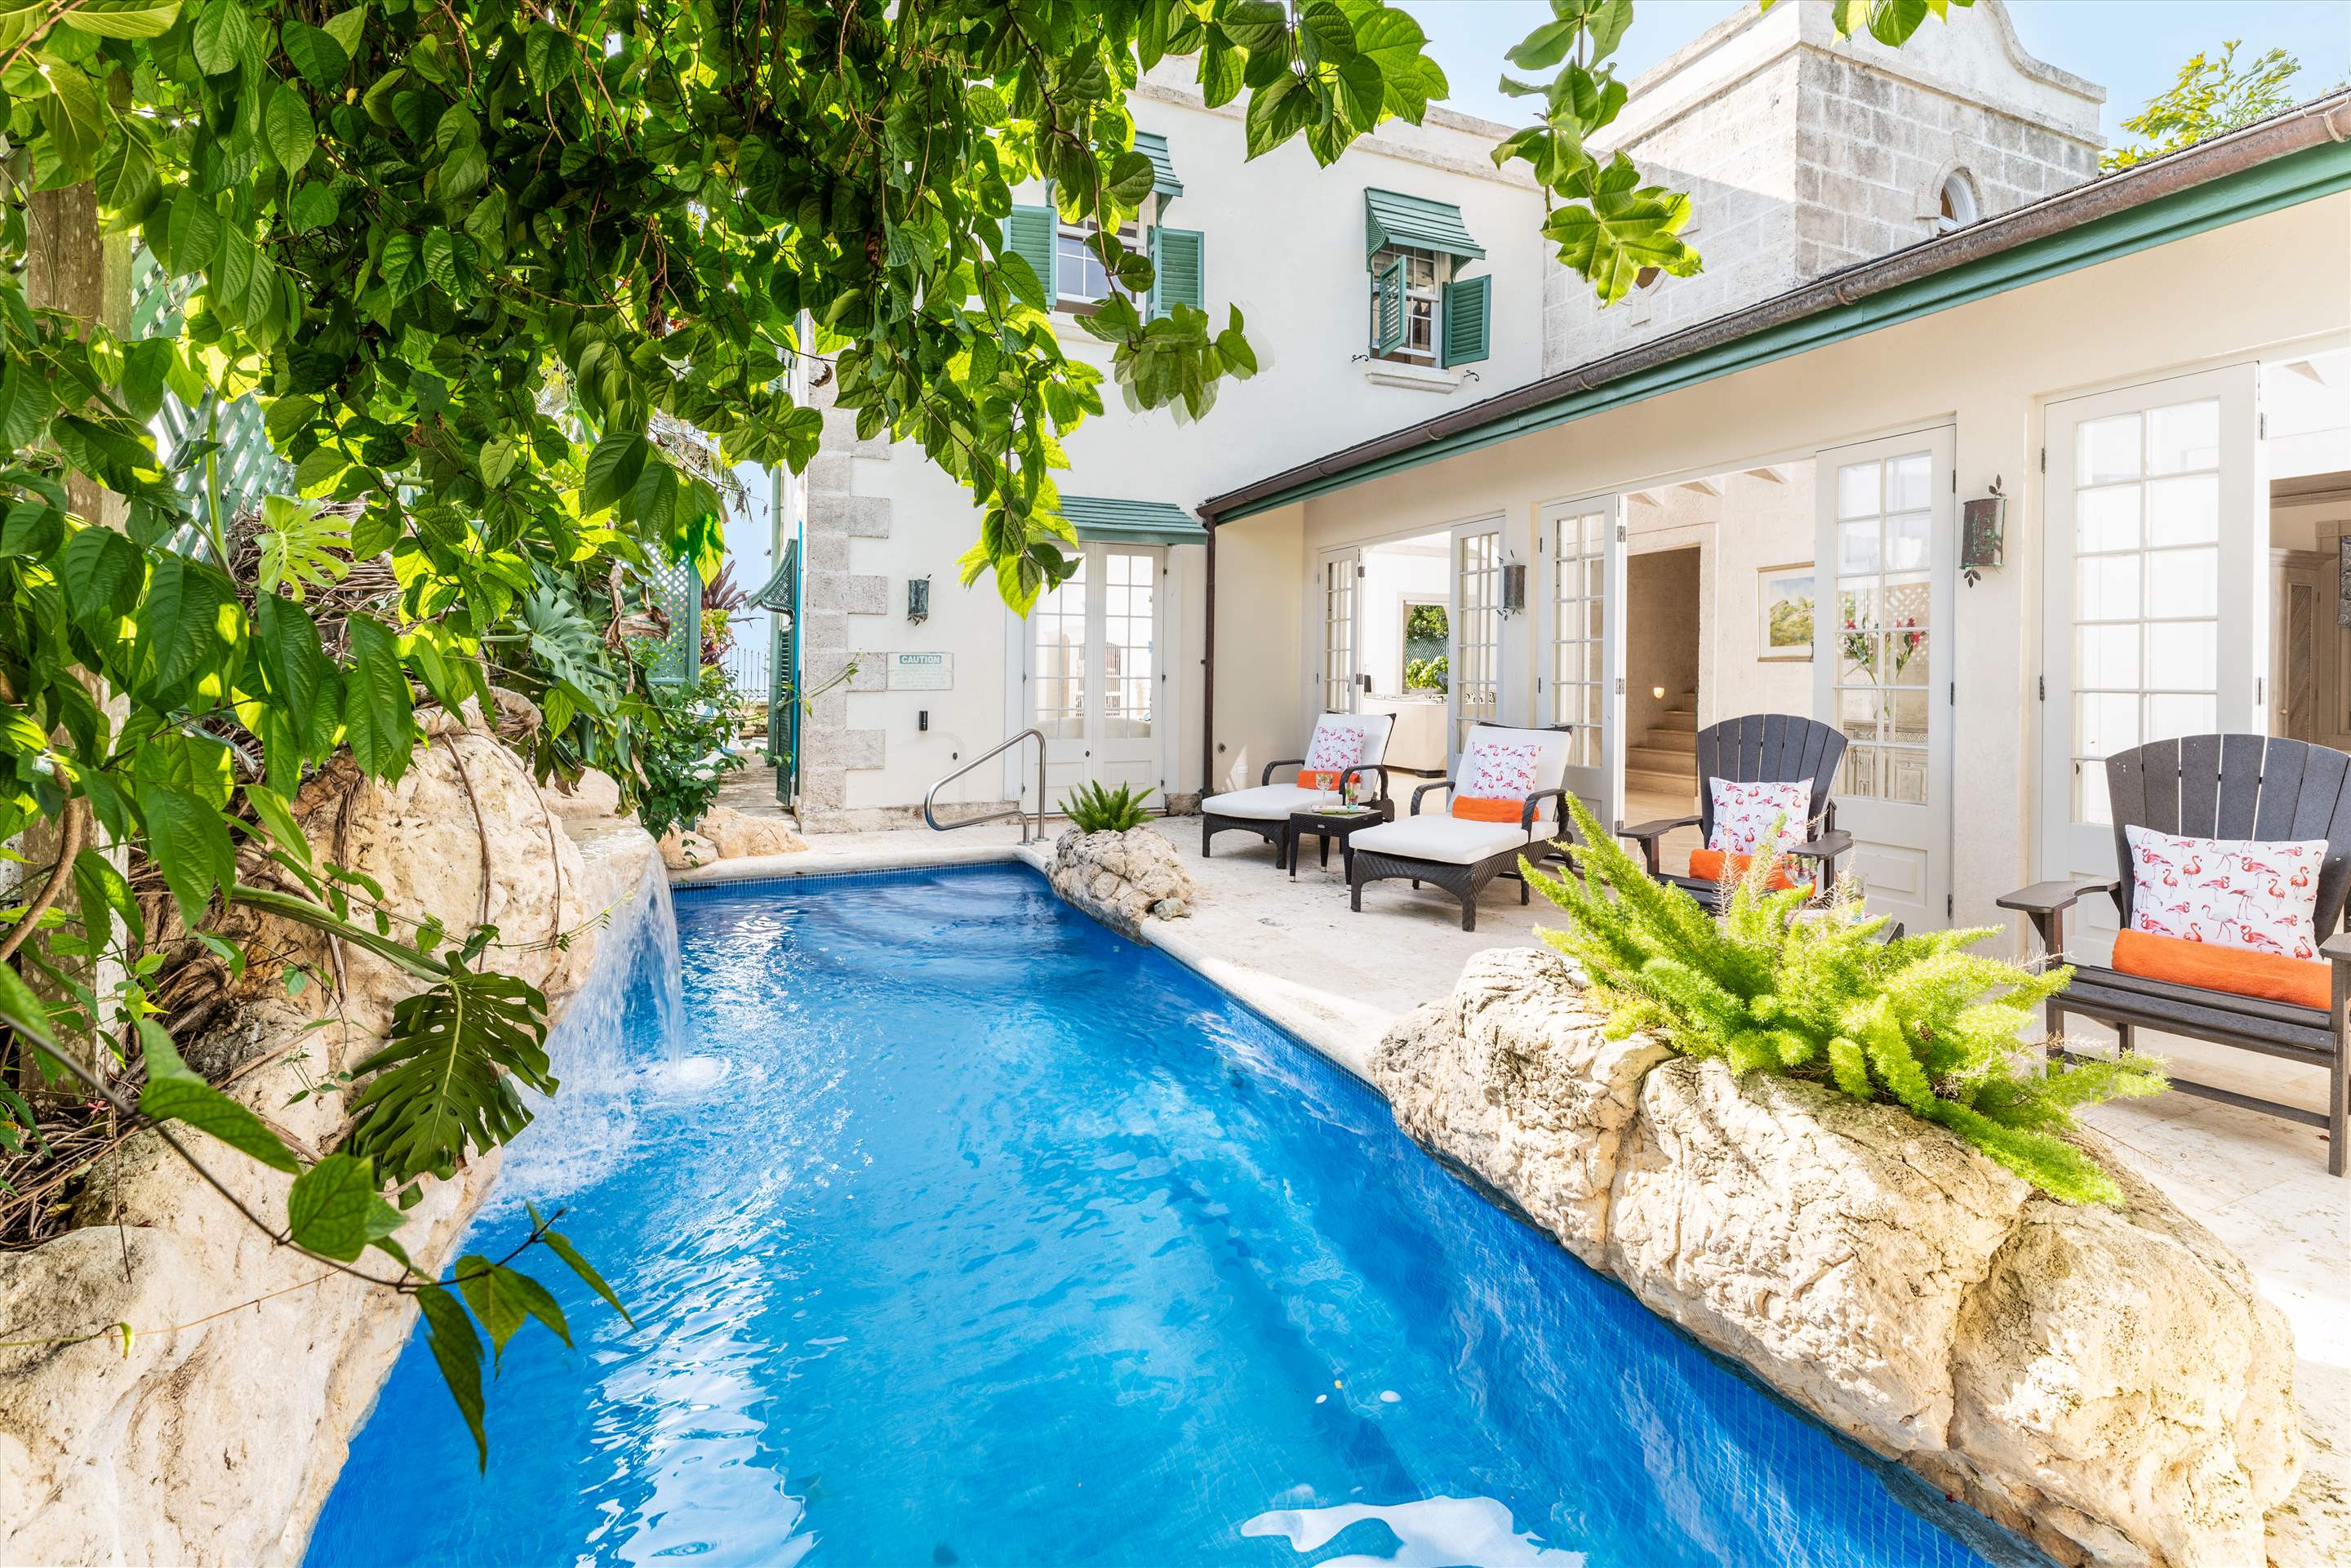 Caprice, 4 bedroom villa in St. James & West Coast, Barbados Photo #4